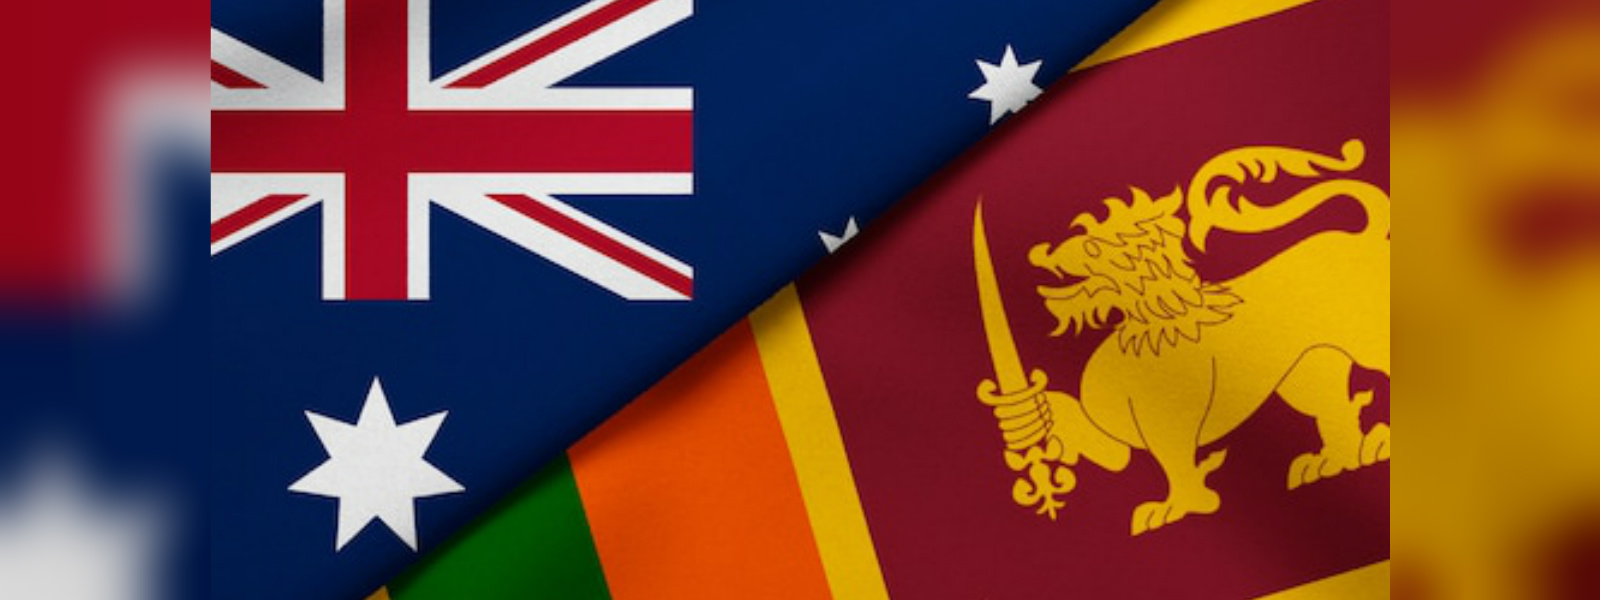 Australian Home Affairs Minister in Sri Lanka